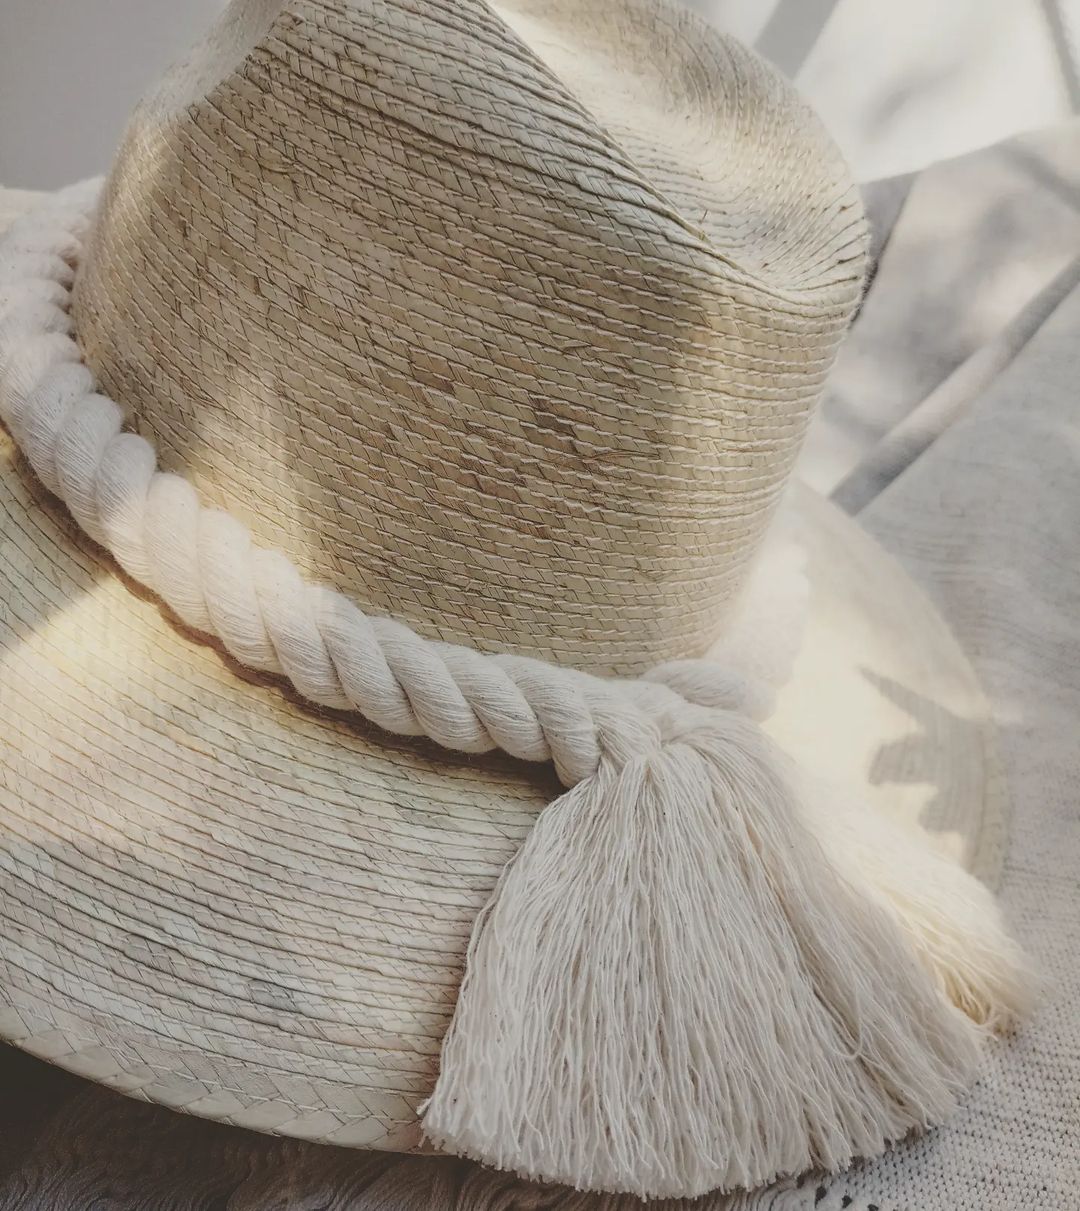 Sombrero de palma natural cordón en crudo.